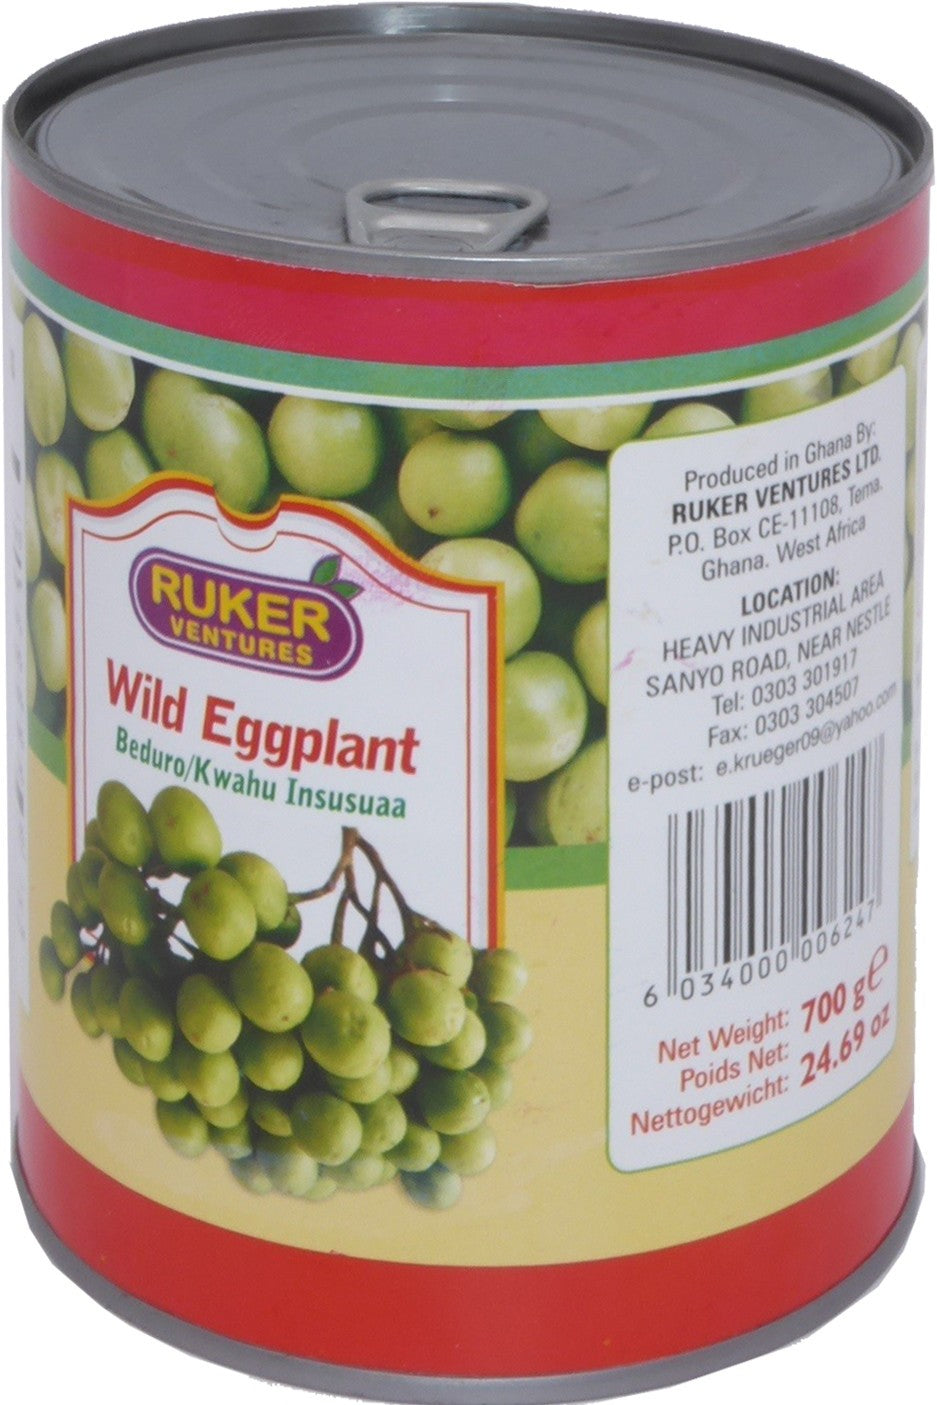 (CANNED VEGETABLES) Wild Eggplant Ruker 700 gr.